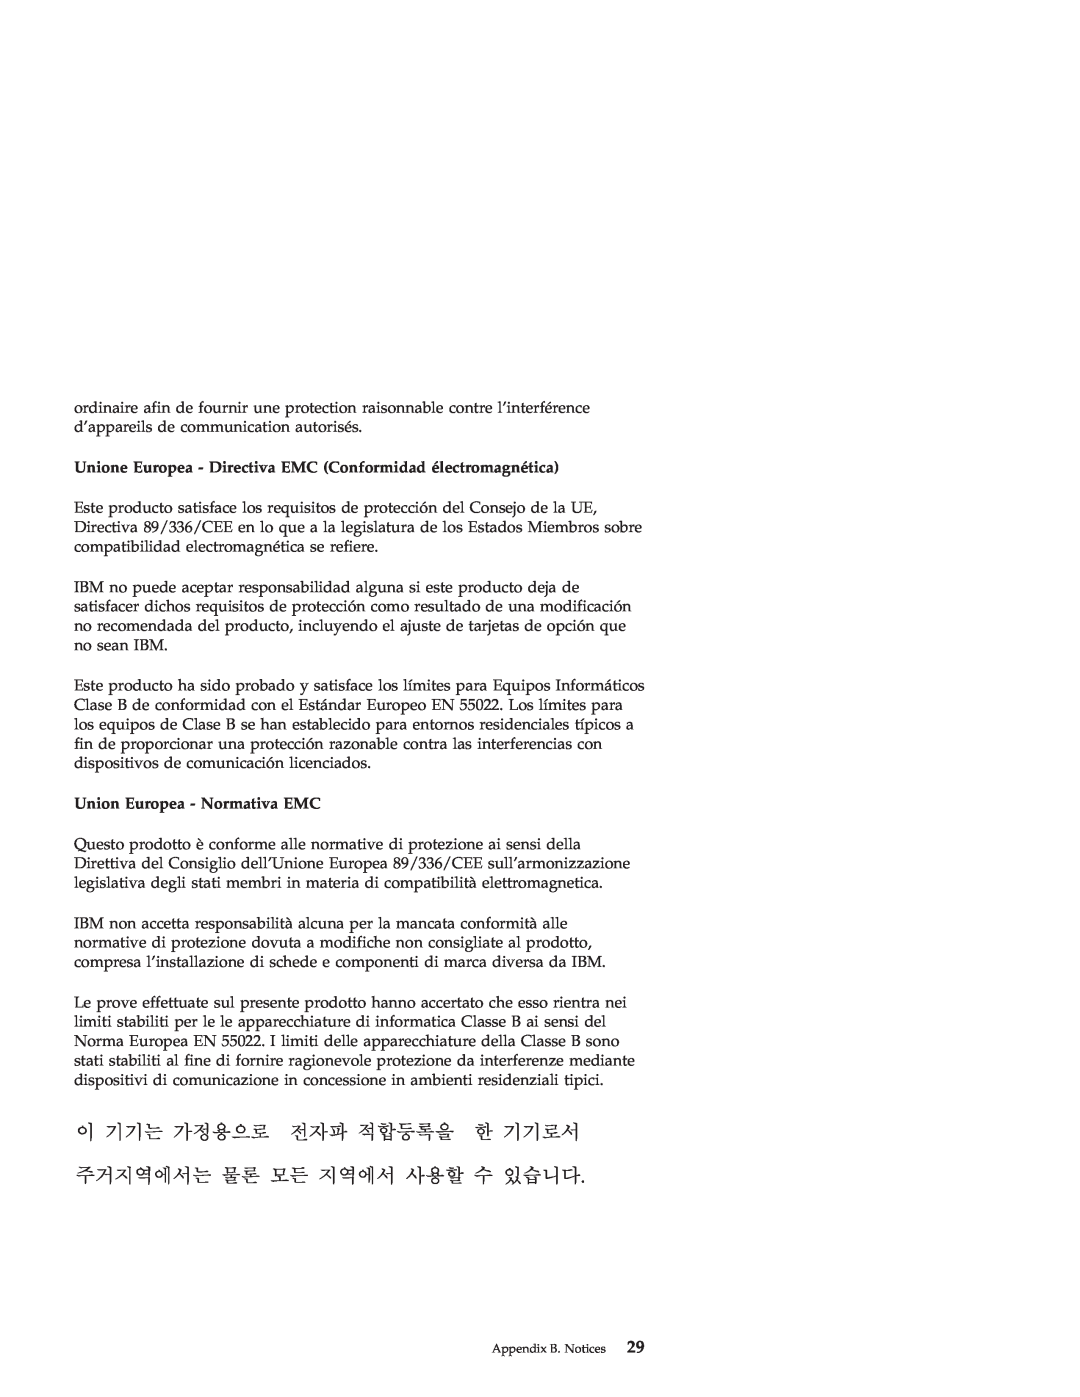 IBM 22P7007 manual Unione Europea - Directiva EMC Conformidad électromagnética, Union Europea - Normativa EMC 